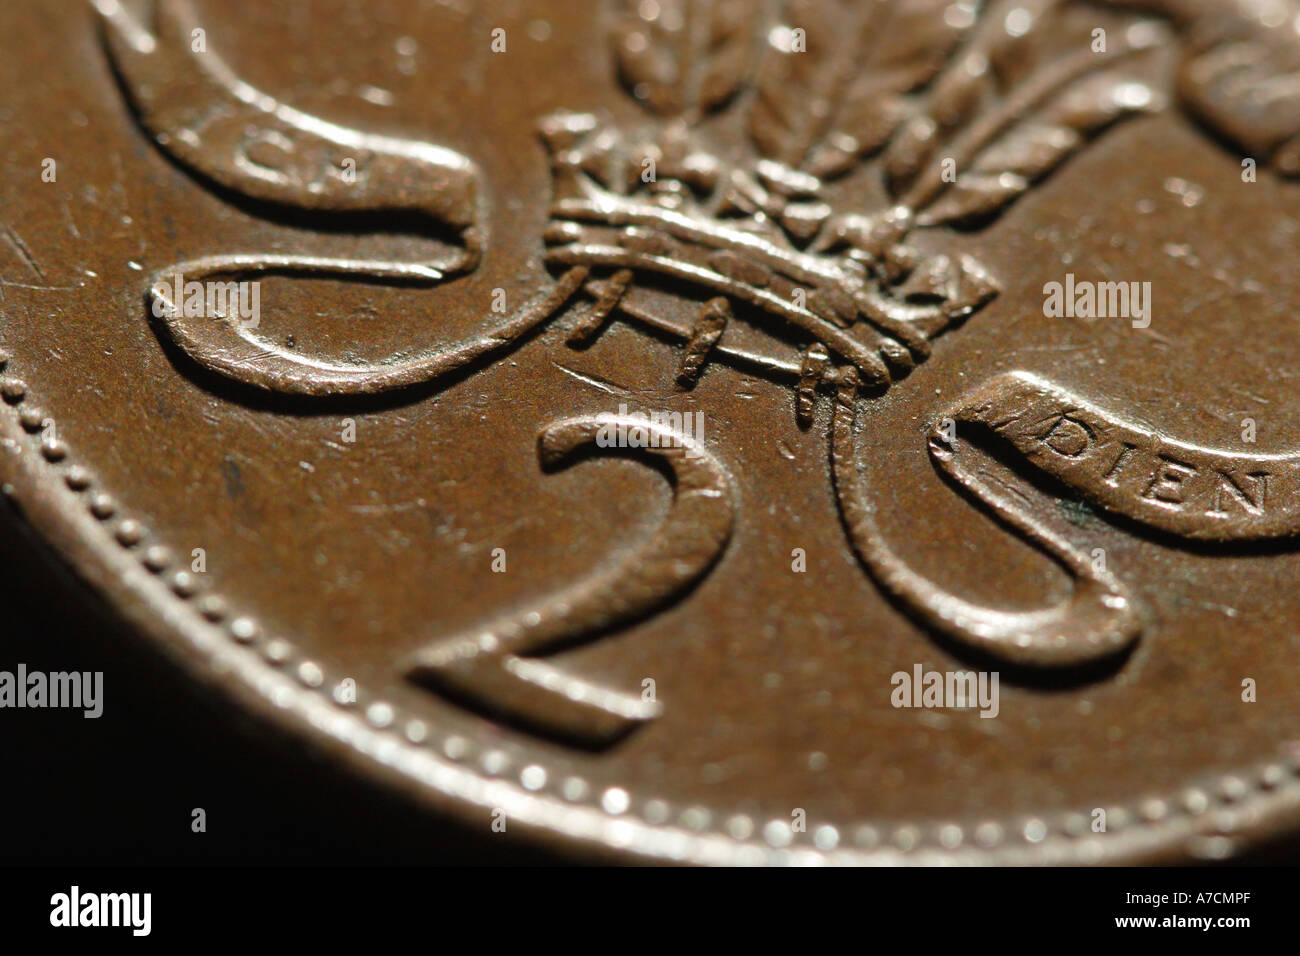 Detalle de dos británicos penny coin 2 peniques con escritura ICH DIEN moneda Foto de stock